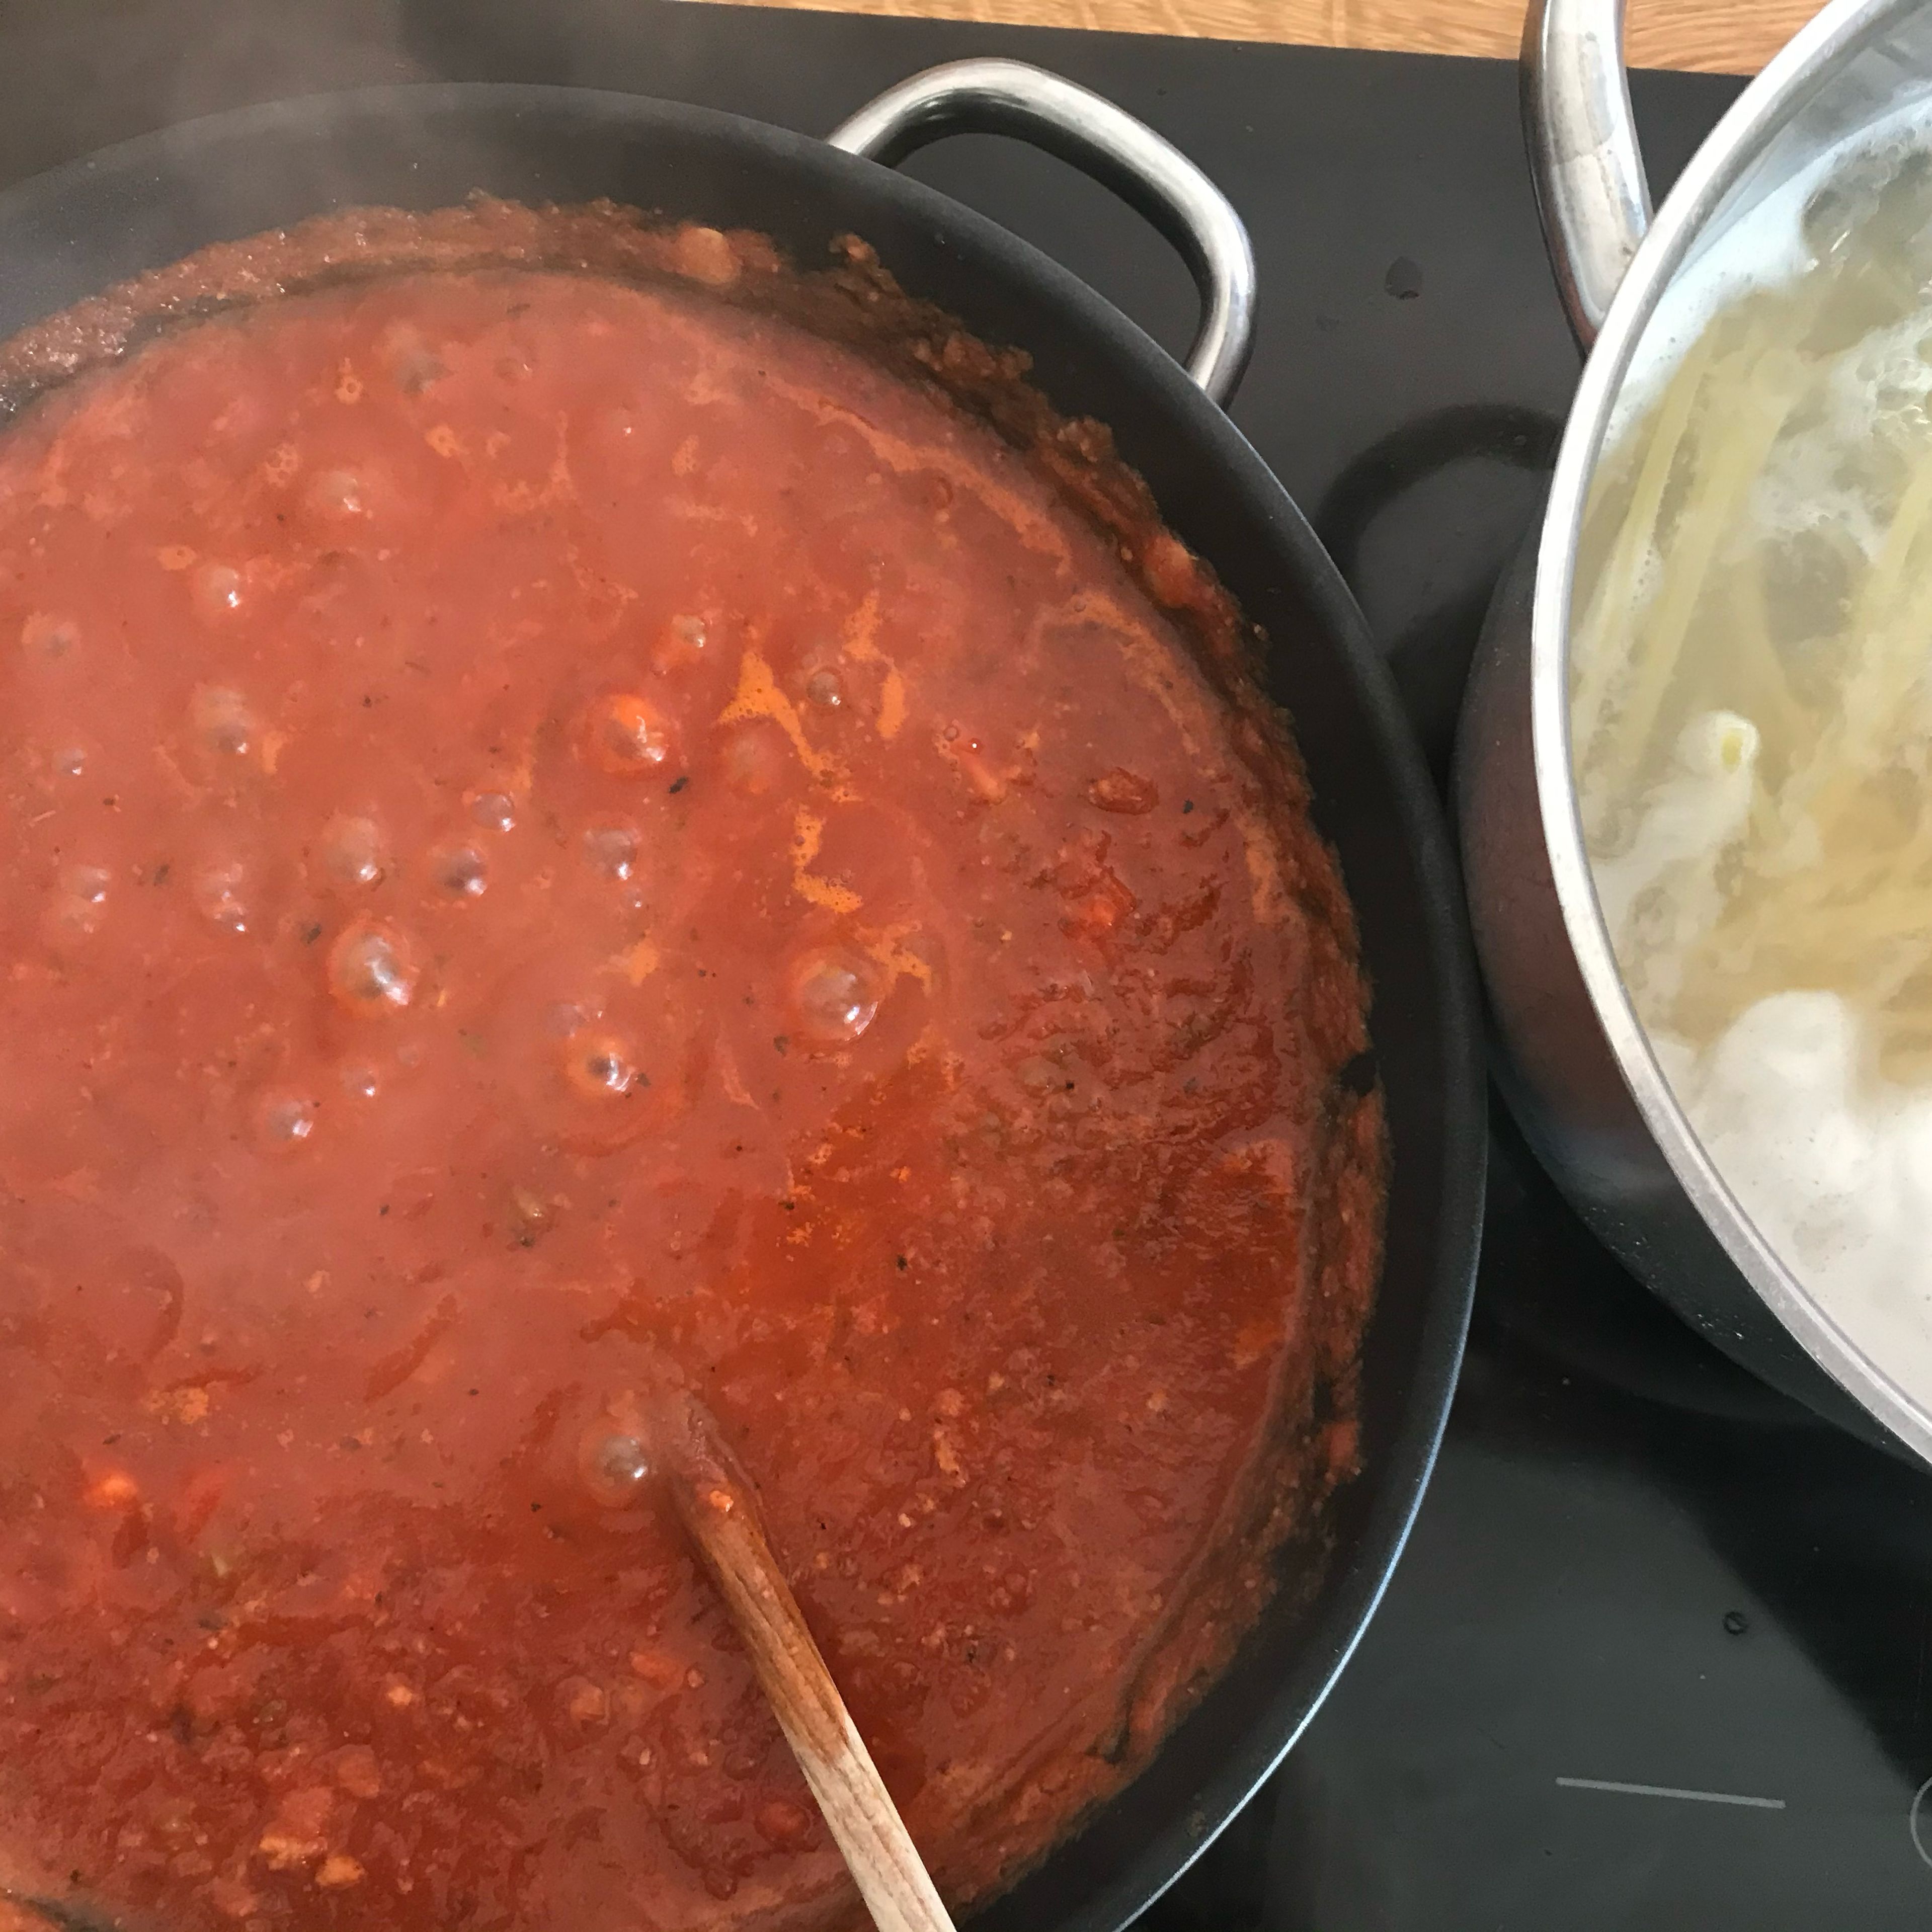 Tomaten entstrunken und fein püriert mit in die Pfanne geben. Mindestens 20 min köcheln lassen. Währenddessen Spaghetti in großem Kochtopf mit Wasser und etwas Salz al dente kochen.